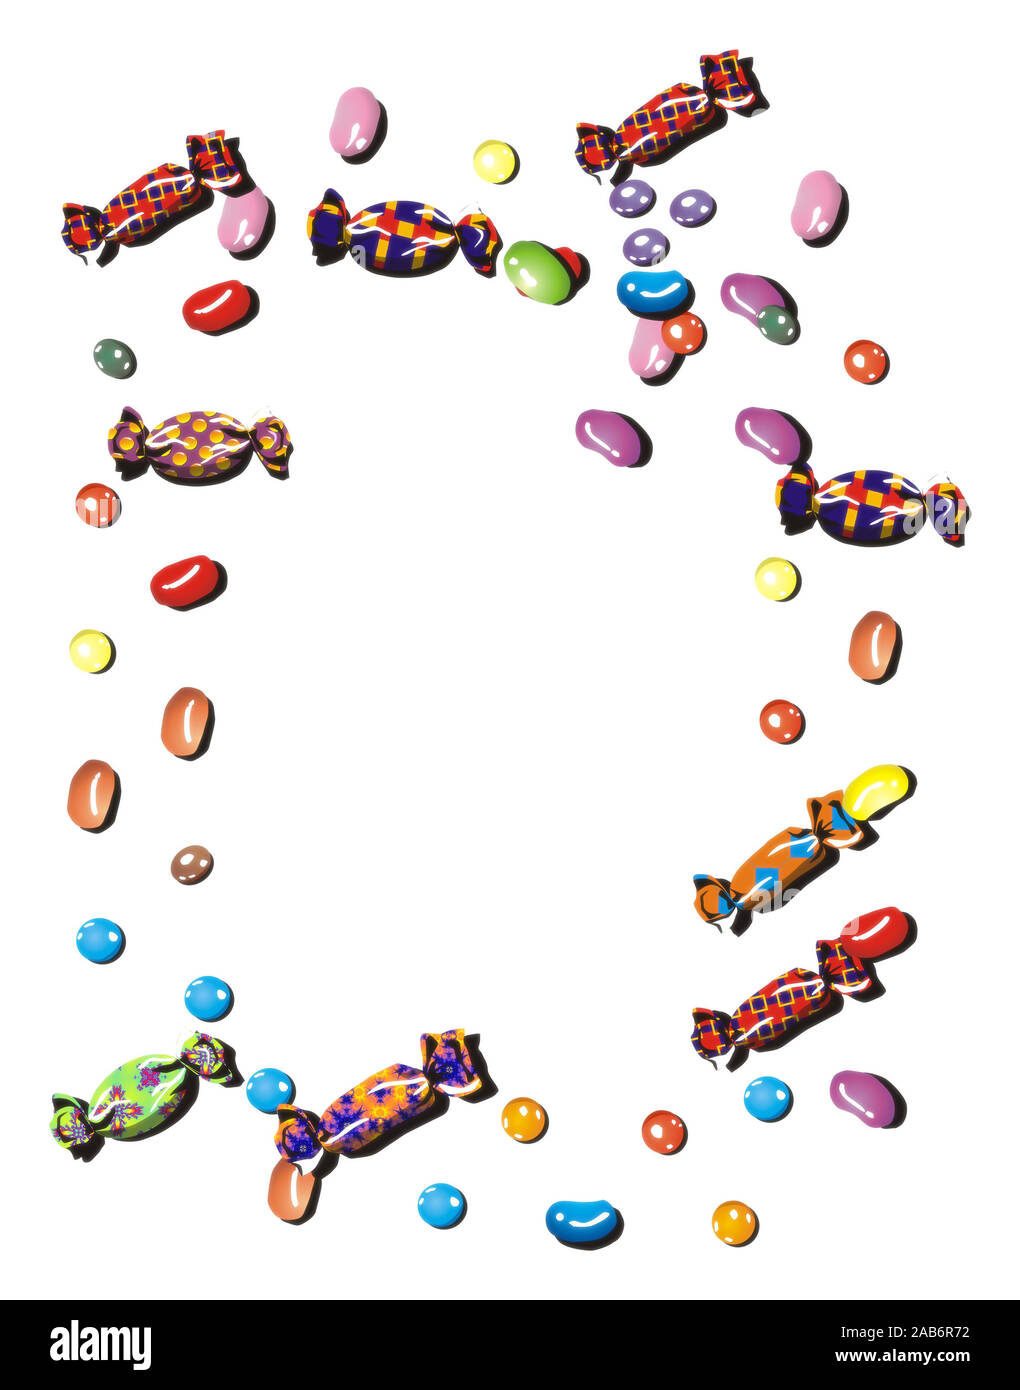 Une illustration d'un cadre de bonbons colorés Banque D'Images